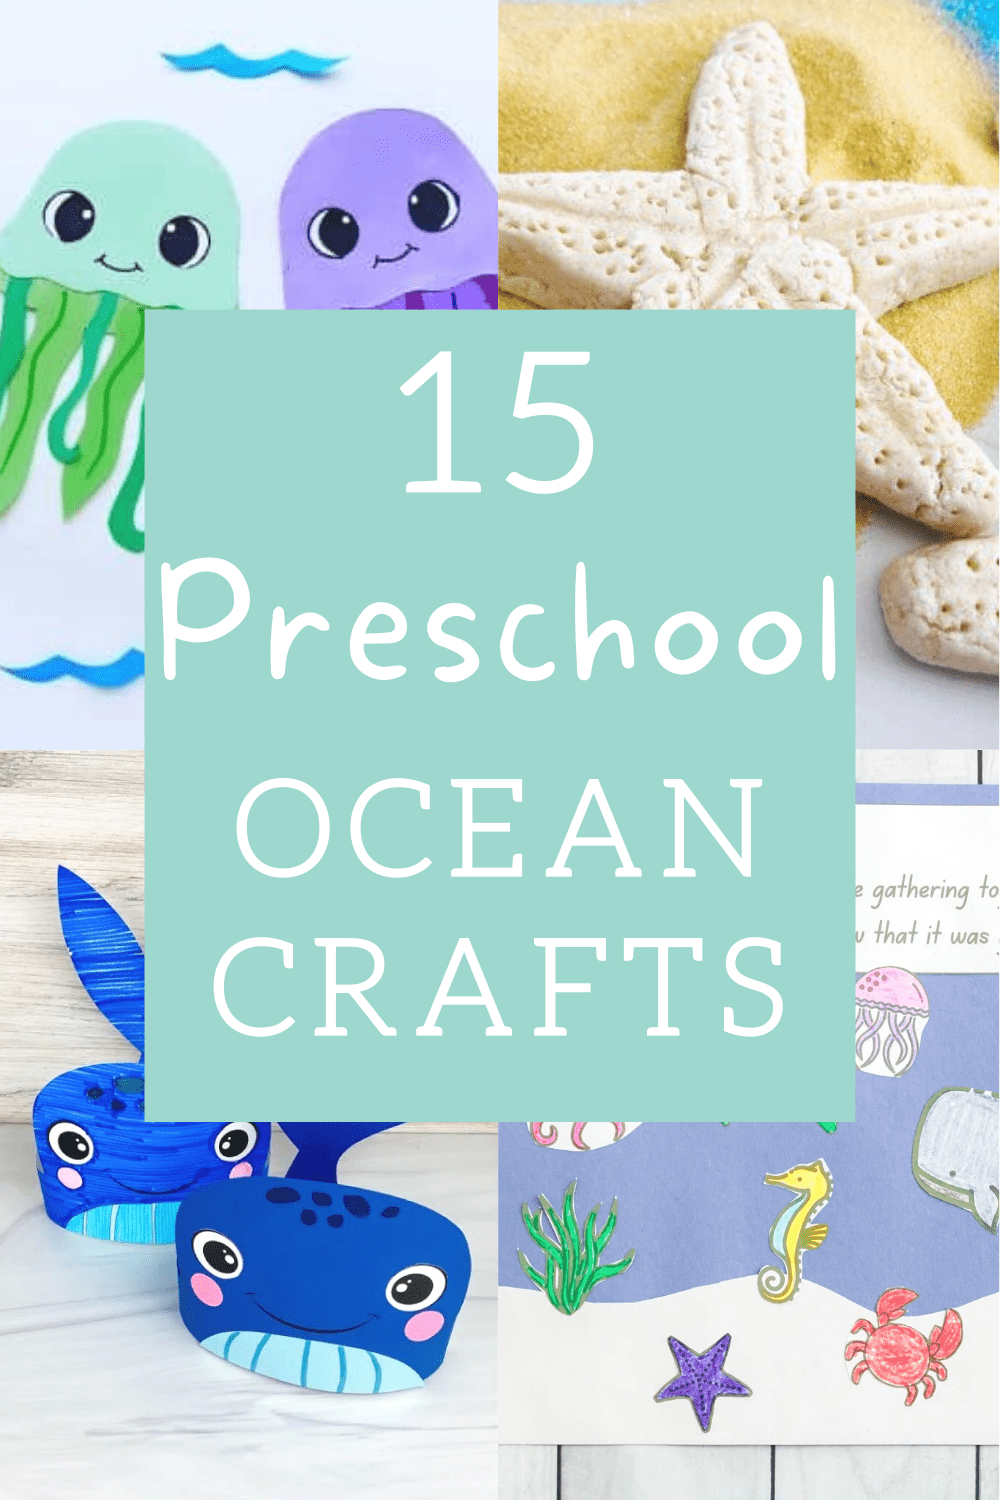 preshool ocean crafts 1